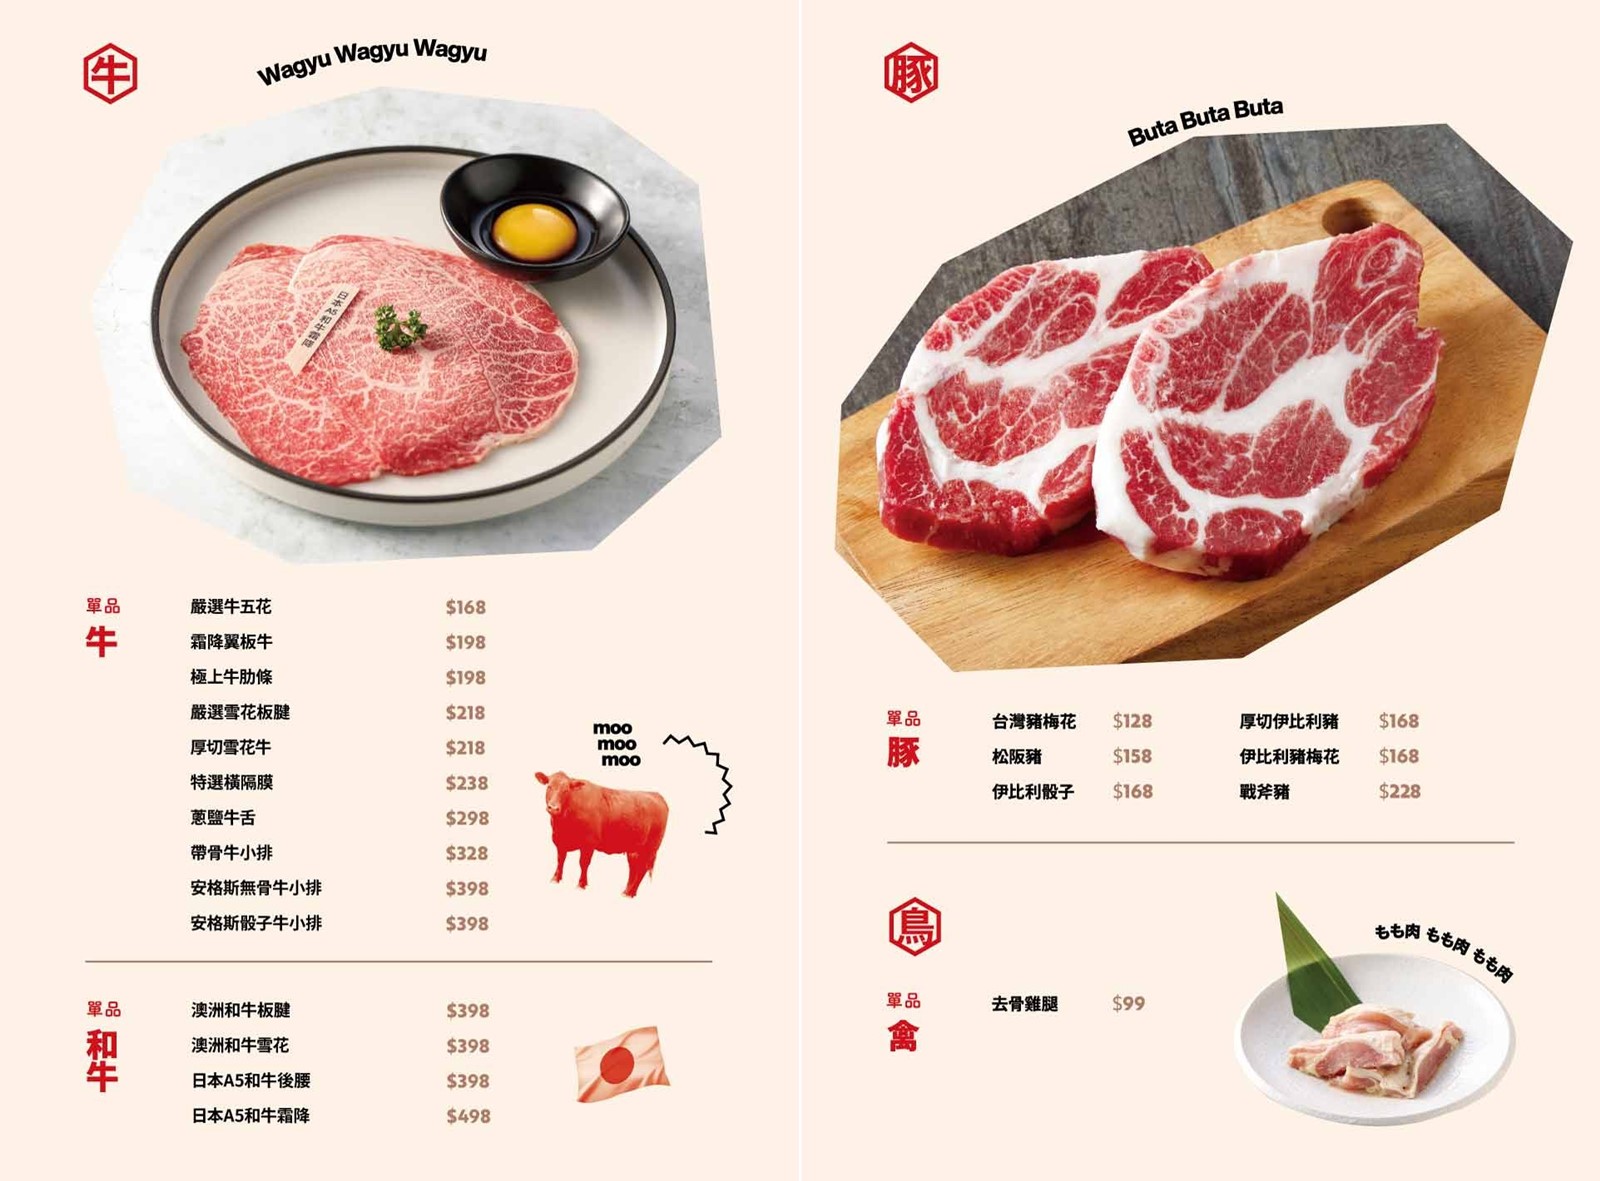 日式燒肉創意吃法更多變化，重點是餐點好吃肉質都很讚！ Oh my!原燒菜單 @巧莉的世界流浪筆記